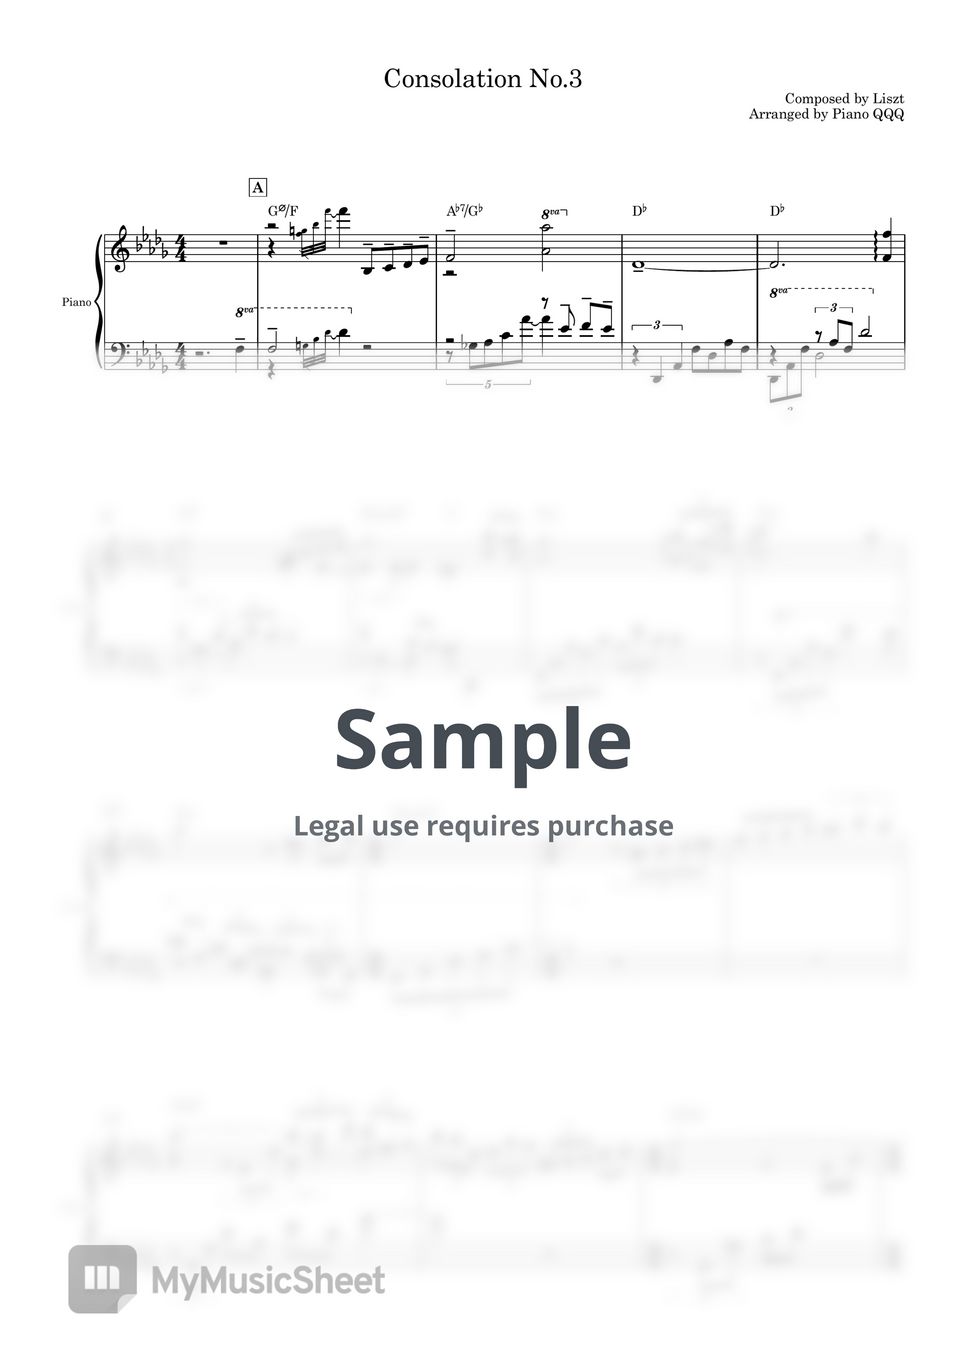 Liszt - Consolation No.3 (Piano Solo) by Piano QQQ